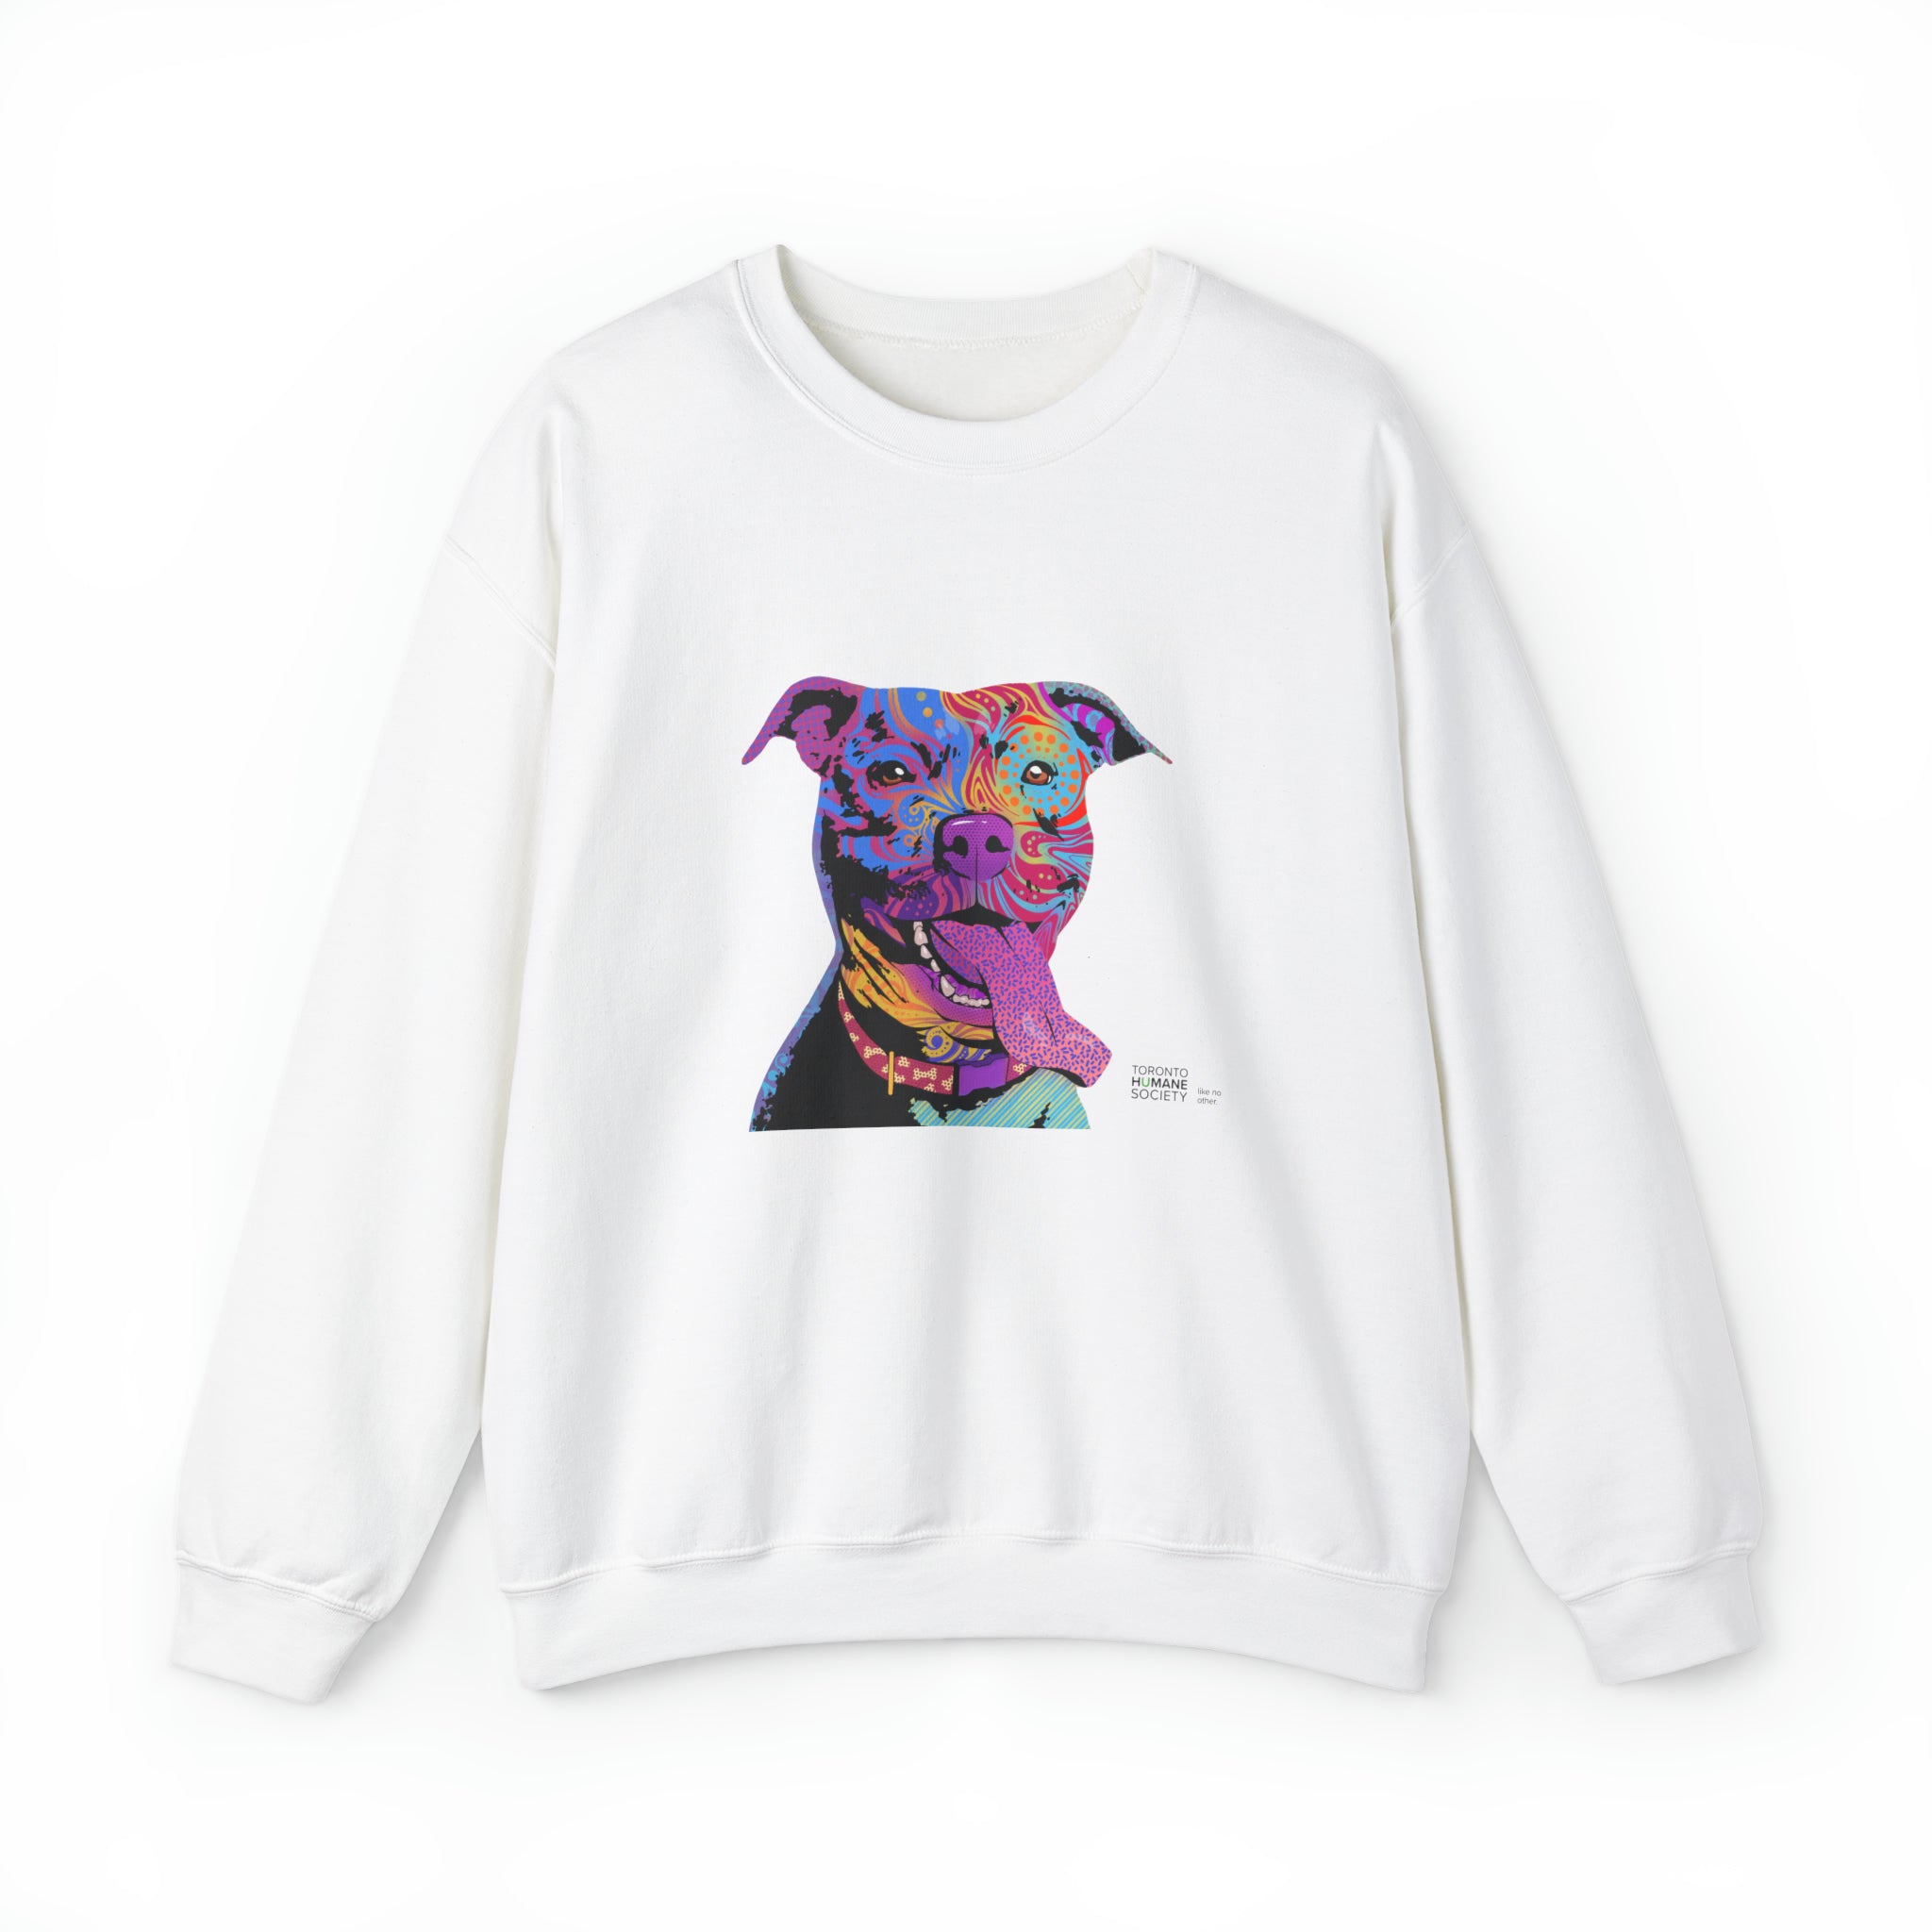 Unisex Sweatshirt - Dog Abstract